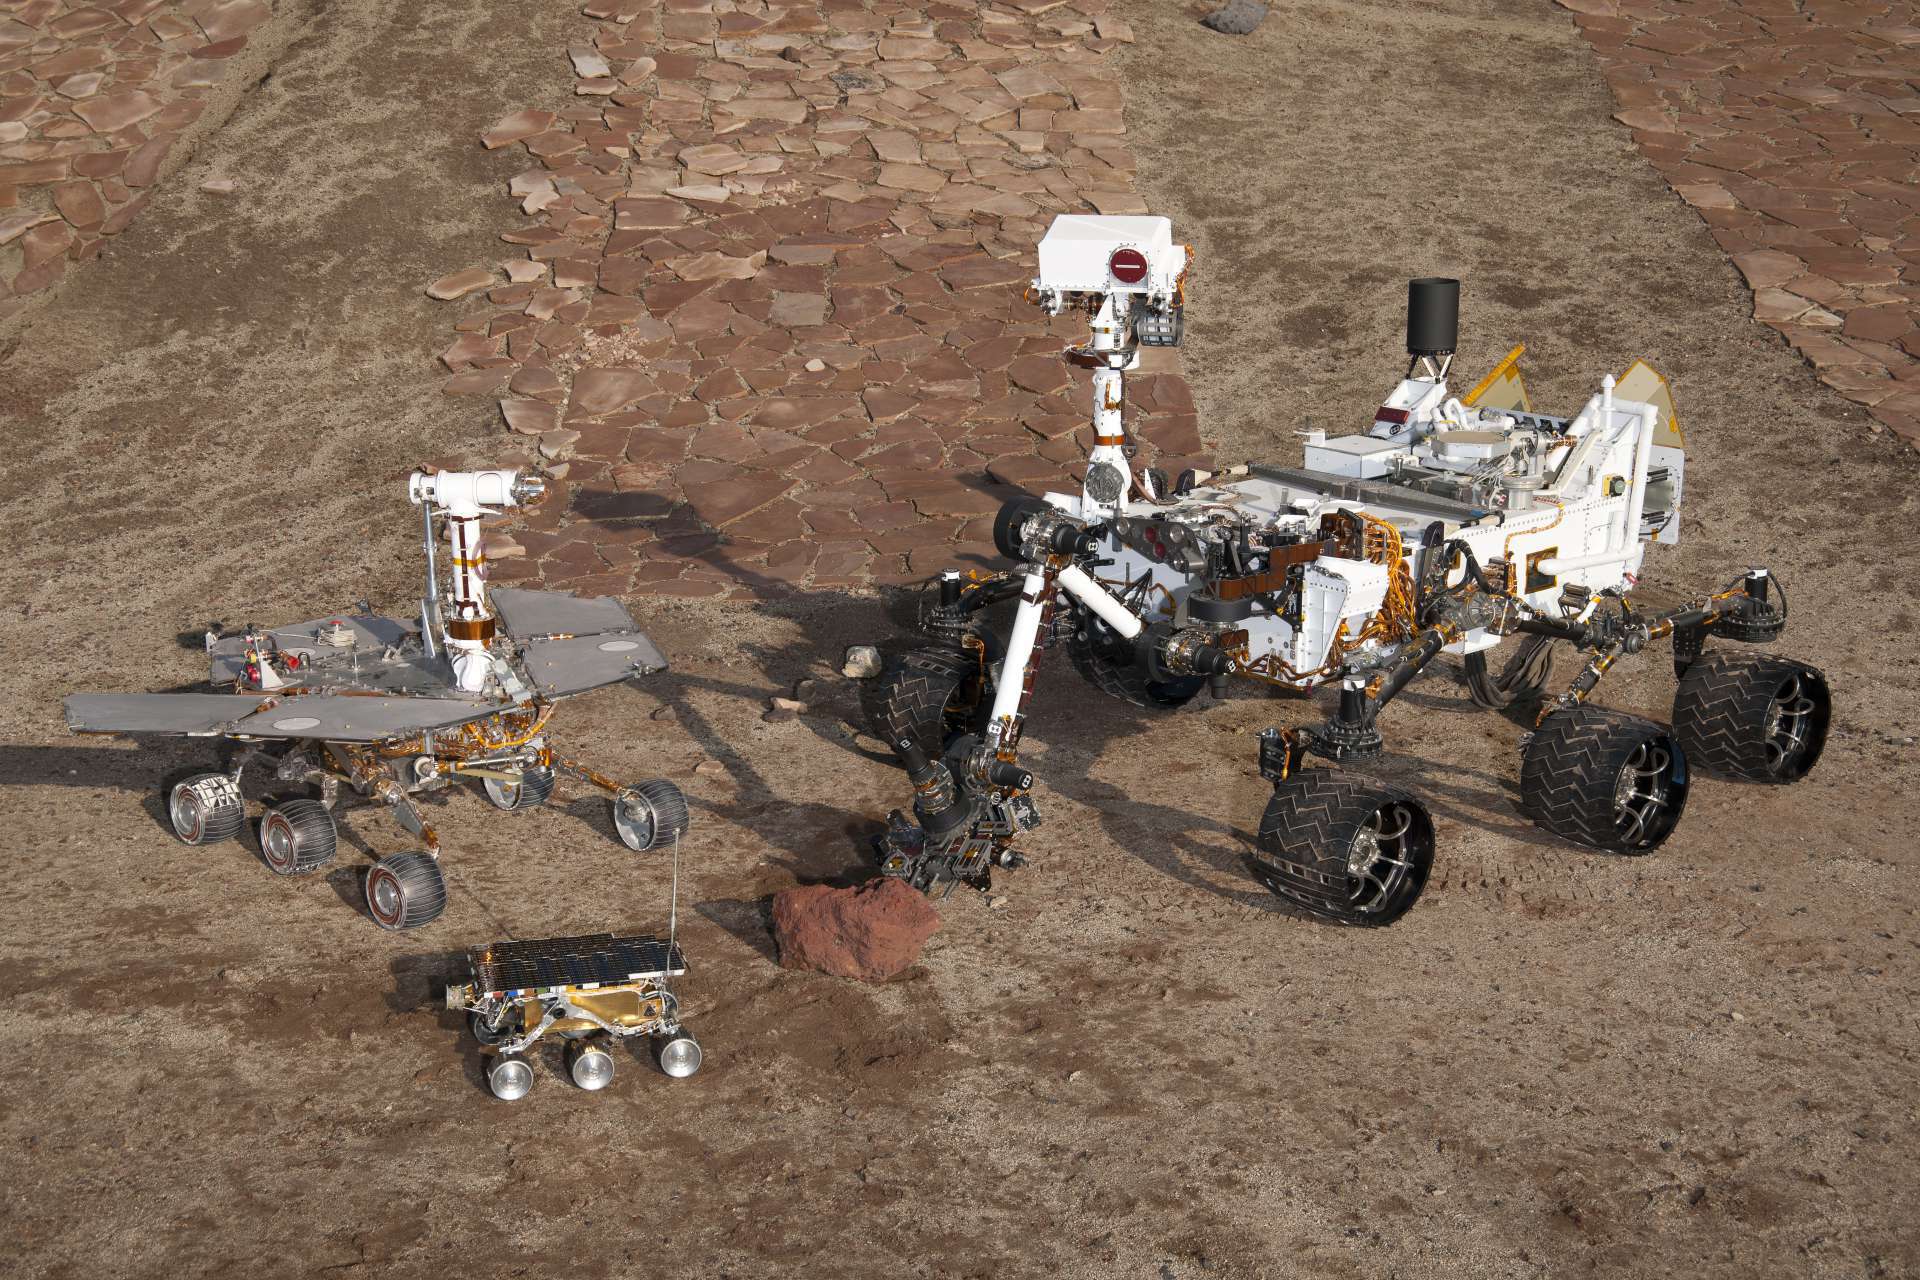 Três gerações de rovers de Martetodos da NASA: à frente e o centro peças sobressalentes do primeiro rover, Sojourner, que pousou em 1997. À esquerda, rover de teste irmão do Spirit and Opportunity, que aterrissou em 2004. À direita, rover de teste do tamanho do Curiosity(Foto: NASA/JPL-Caltech)